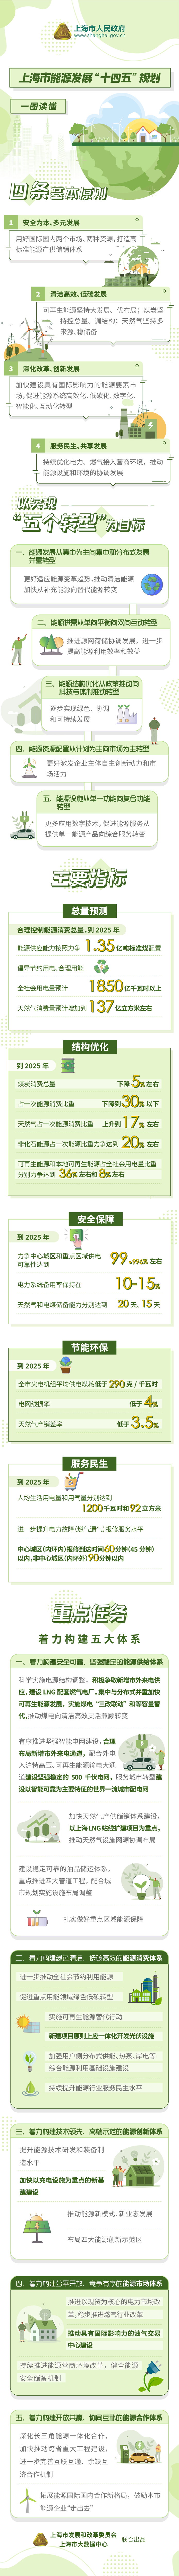 一图读懂《上海市能源发展“十四五”规划》.jpg